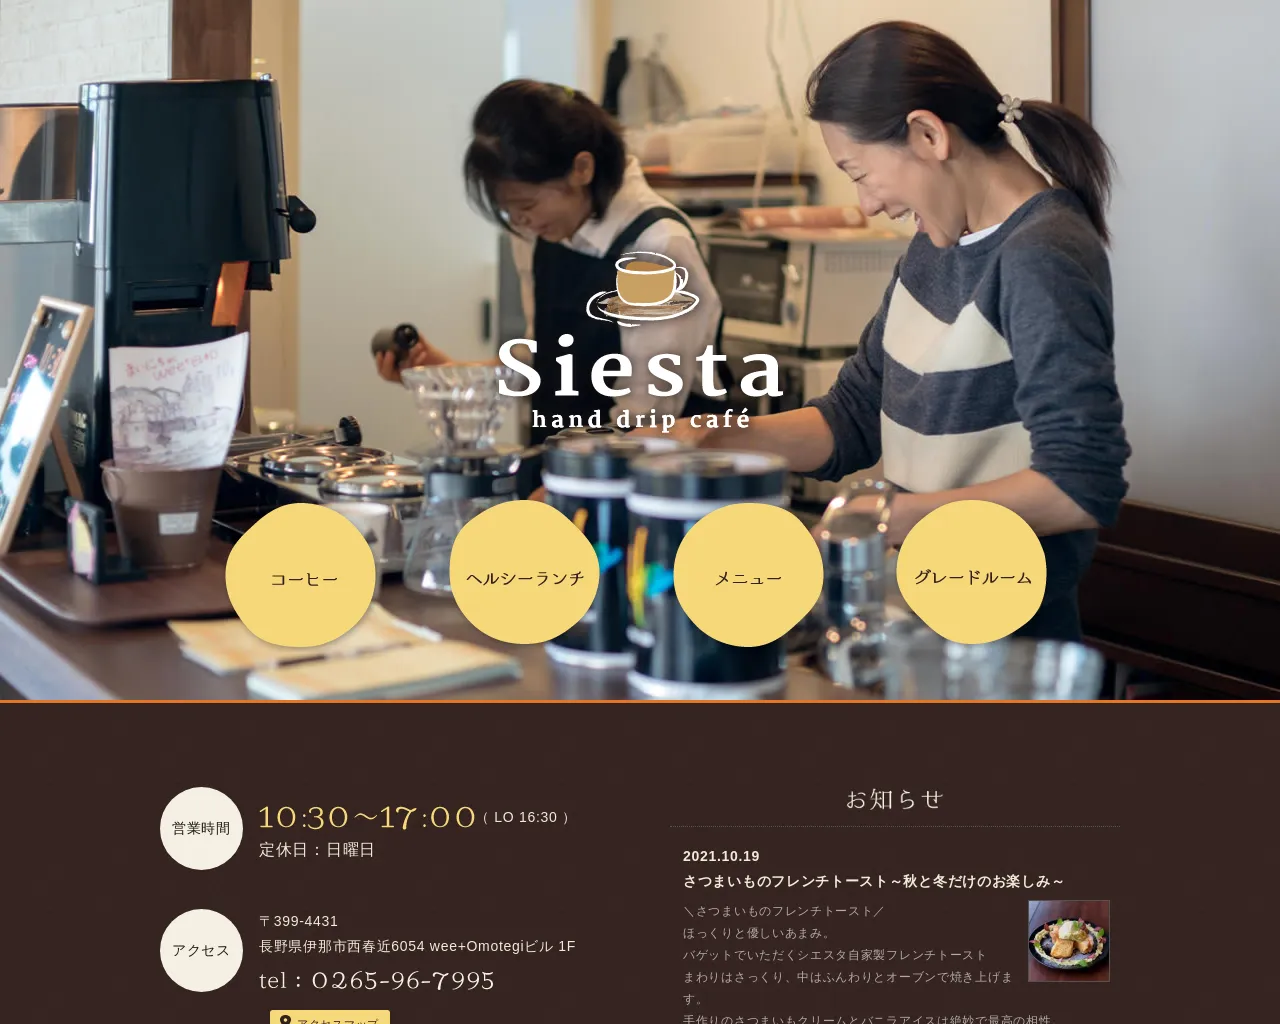 hand drip cafe Siesta site